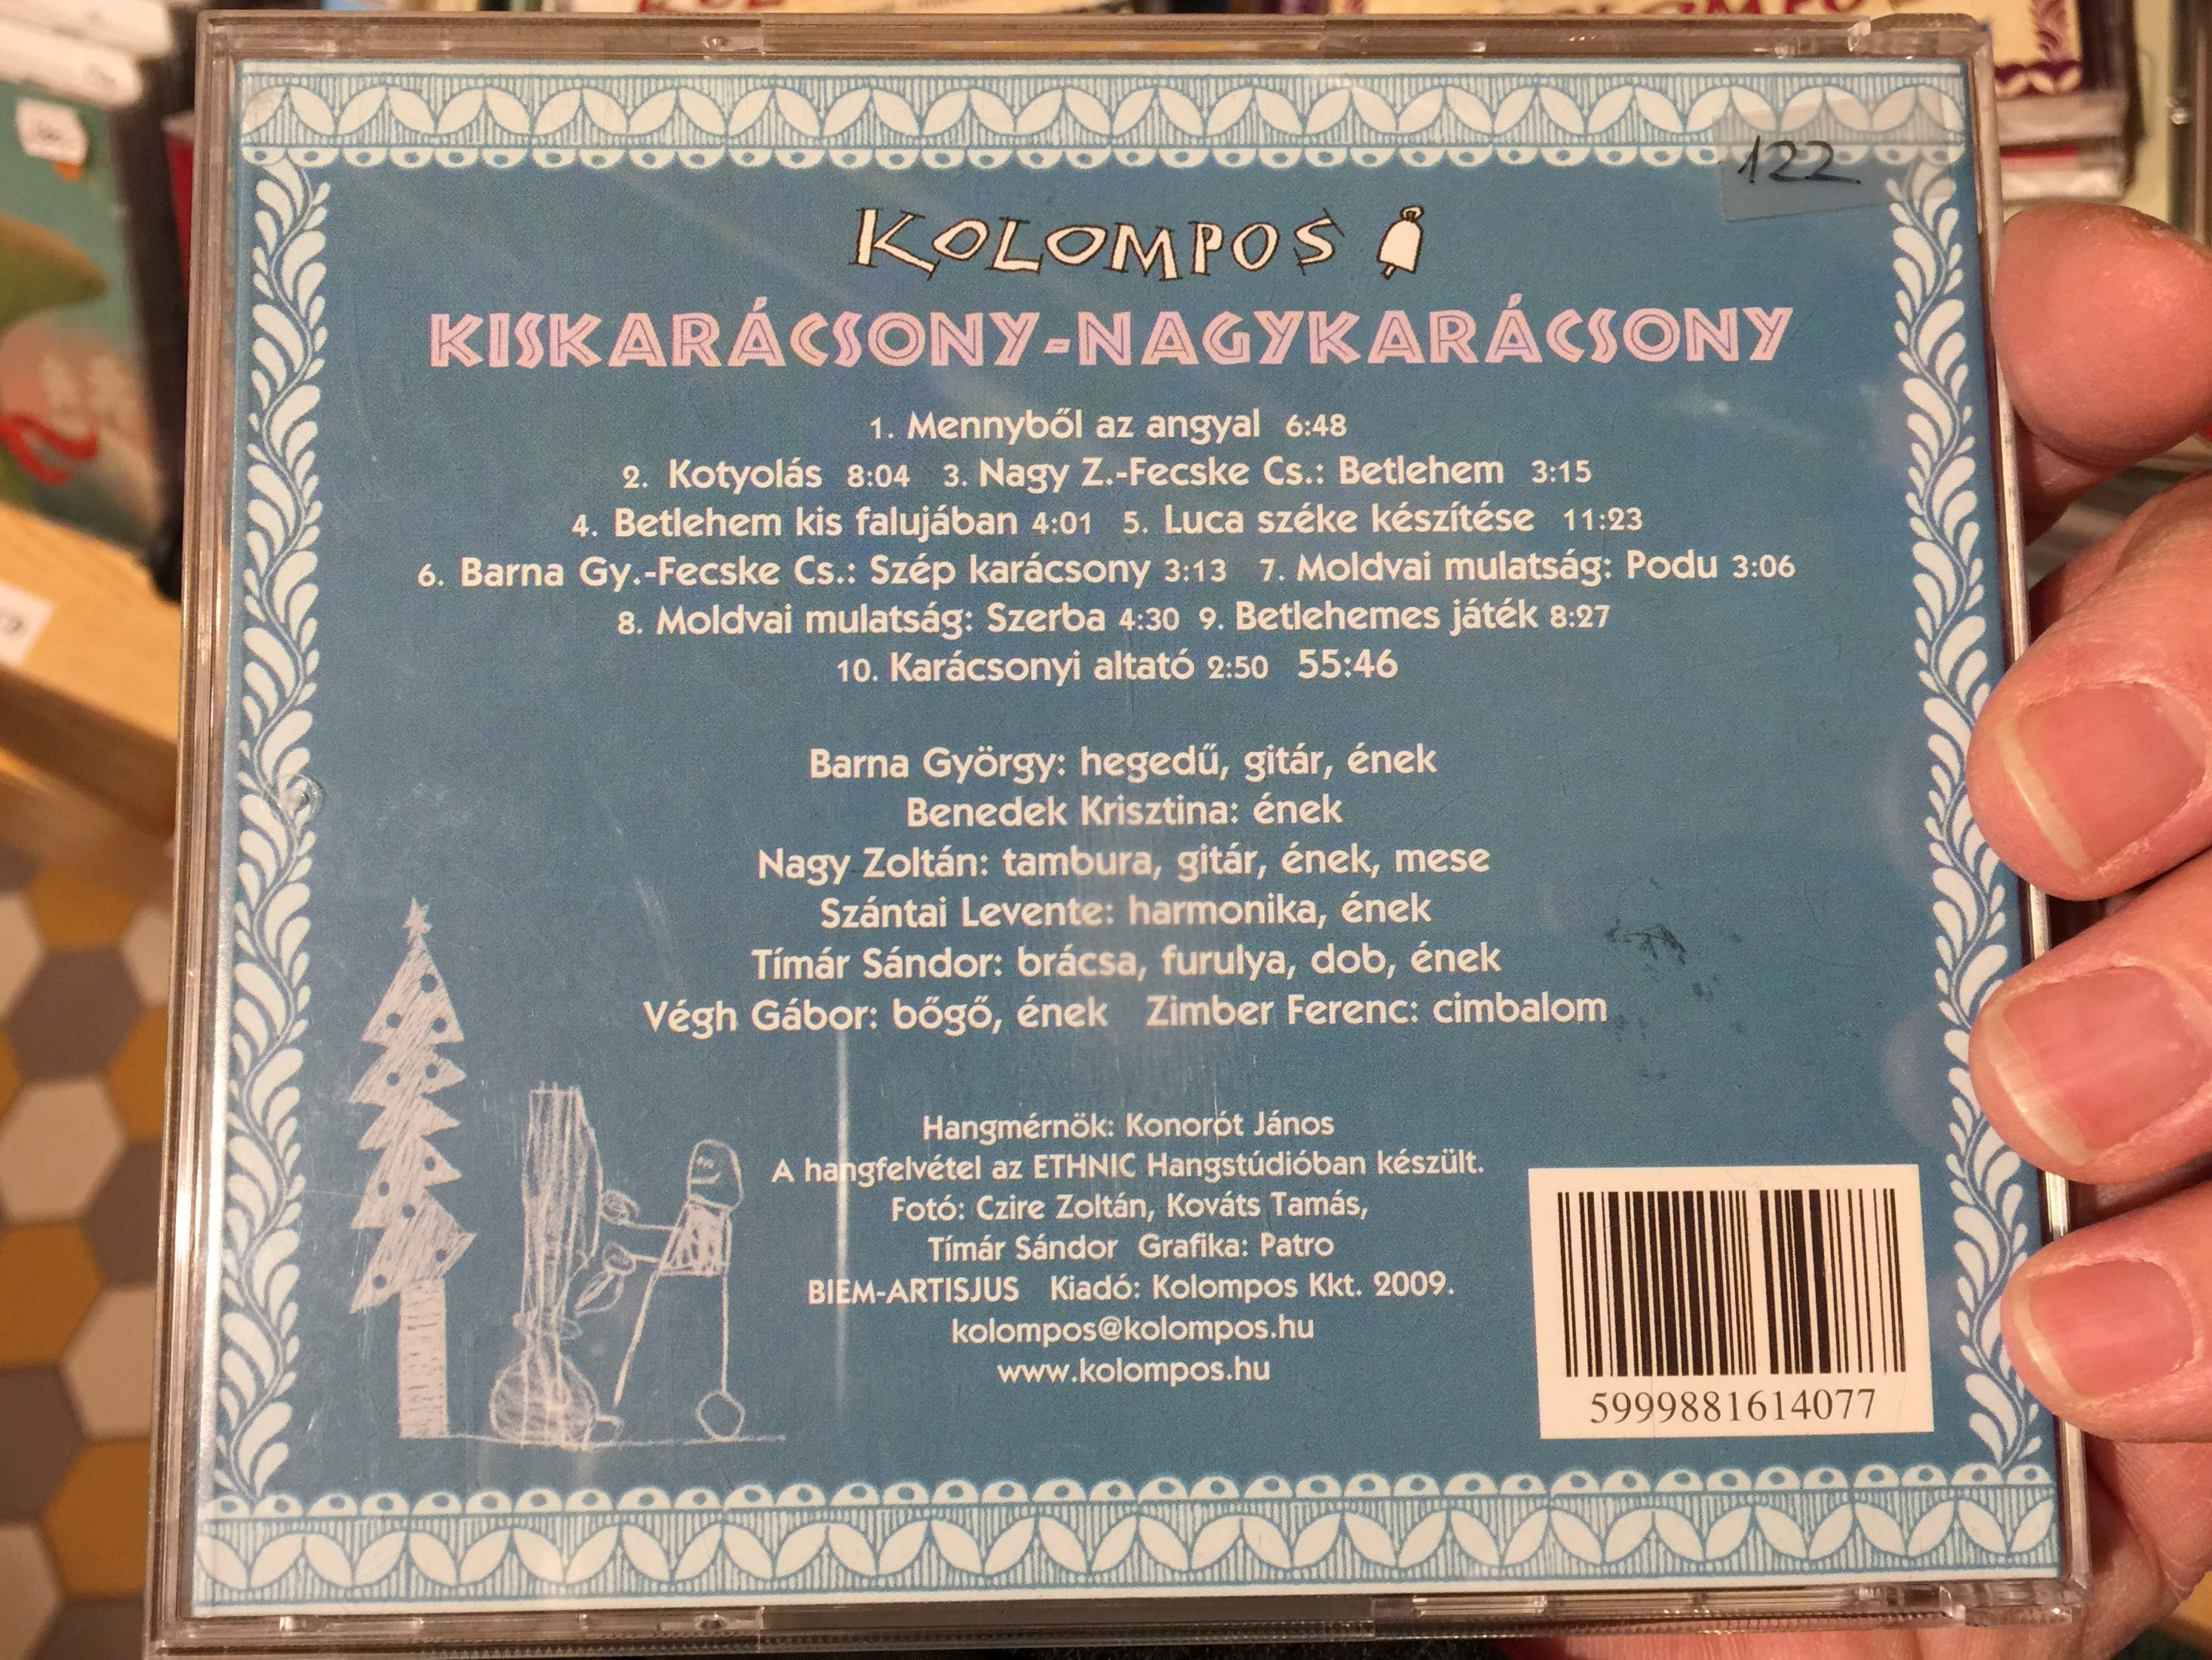 kiskar-csony-nagykar-csony-kolompos-mes-k-j-t-kok-nnepek-mulats-gok-kolompos-kkt.-audio-cd-2009-k-07-2-.jpg